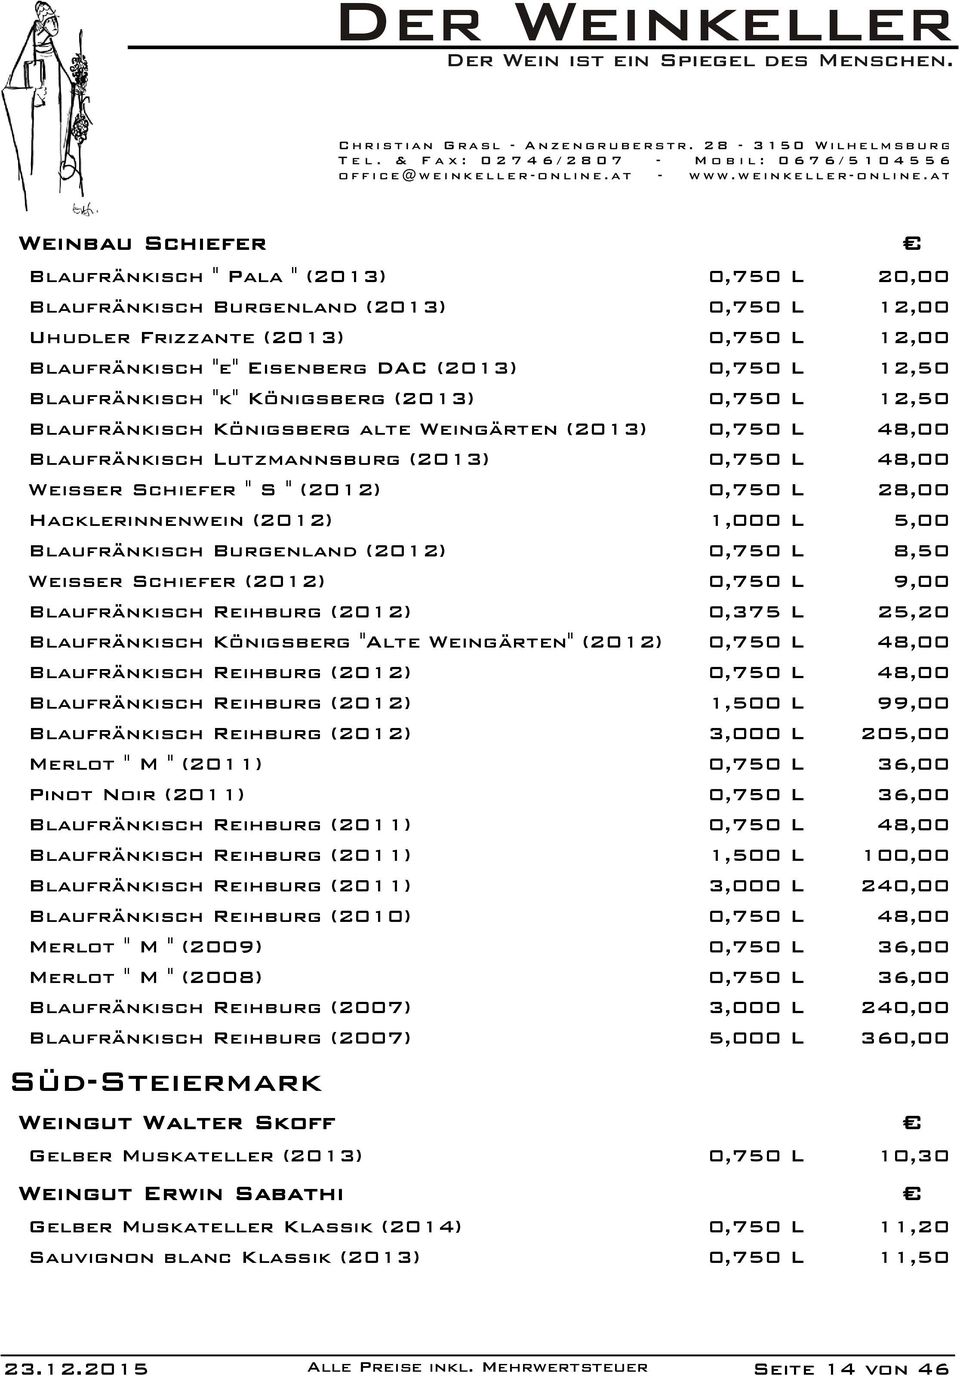 28,00 Hacklerinnenwein (2012) 1,000 L 5,00 Blaufränkisch Burgenland (2012) 0,750 L 8,50 Weisser Schiefer (2012) 0,750 L 9,00 Blaufränkisch Reihburg (2012) 0,375 L 25,20 Blaufränkisch Königsberg "Alte